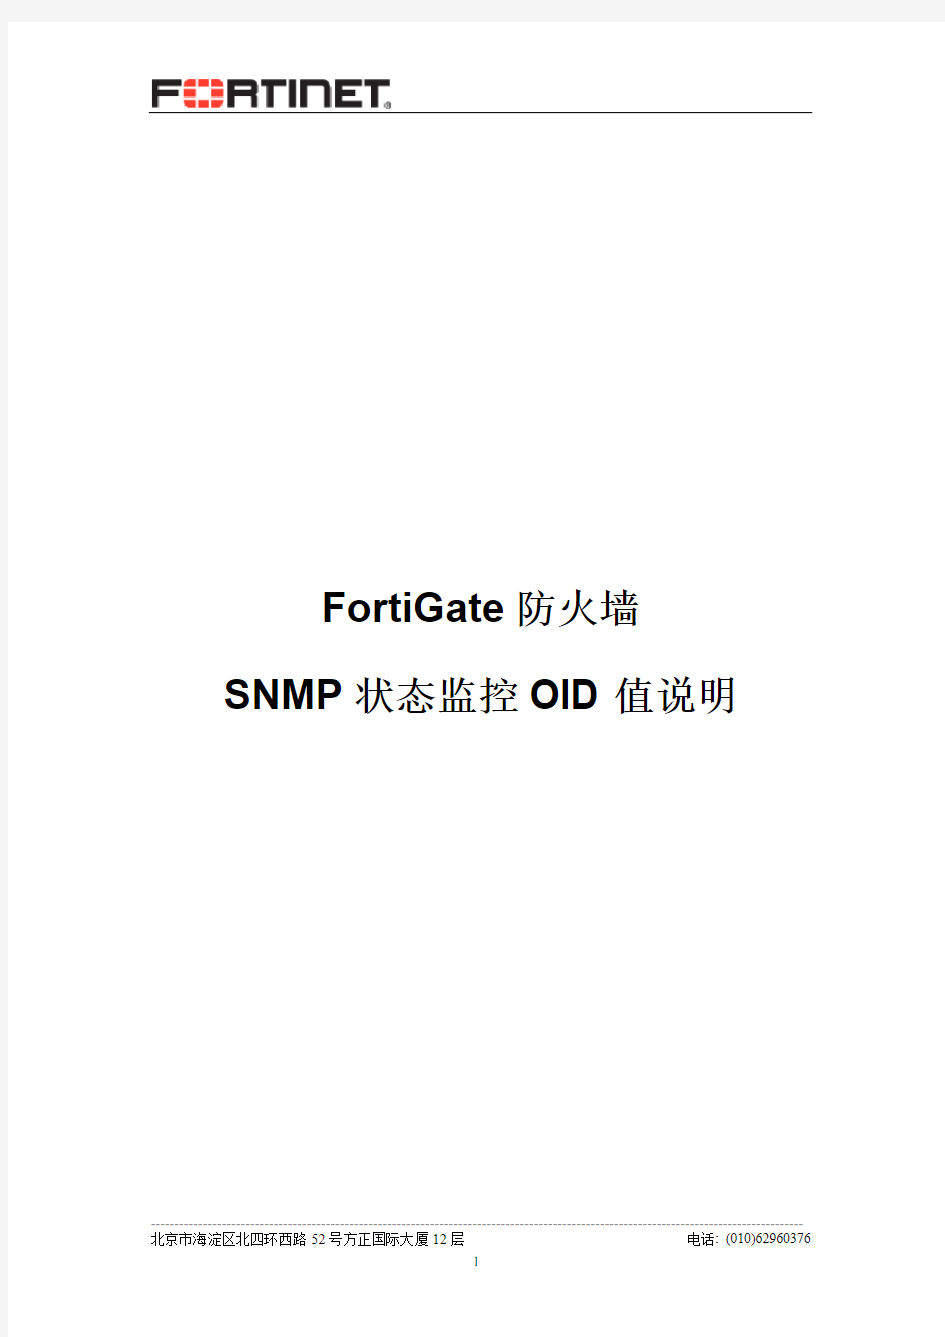 4-FortiGate防火墙SNMP状态监控OID值说明-v1.1